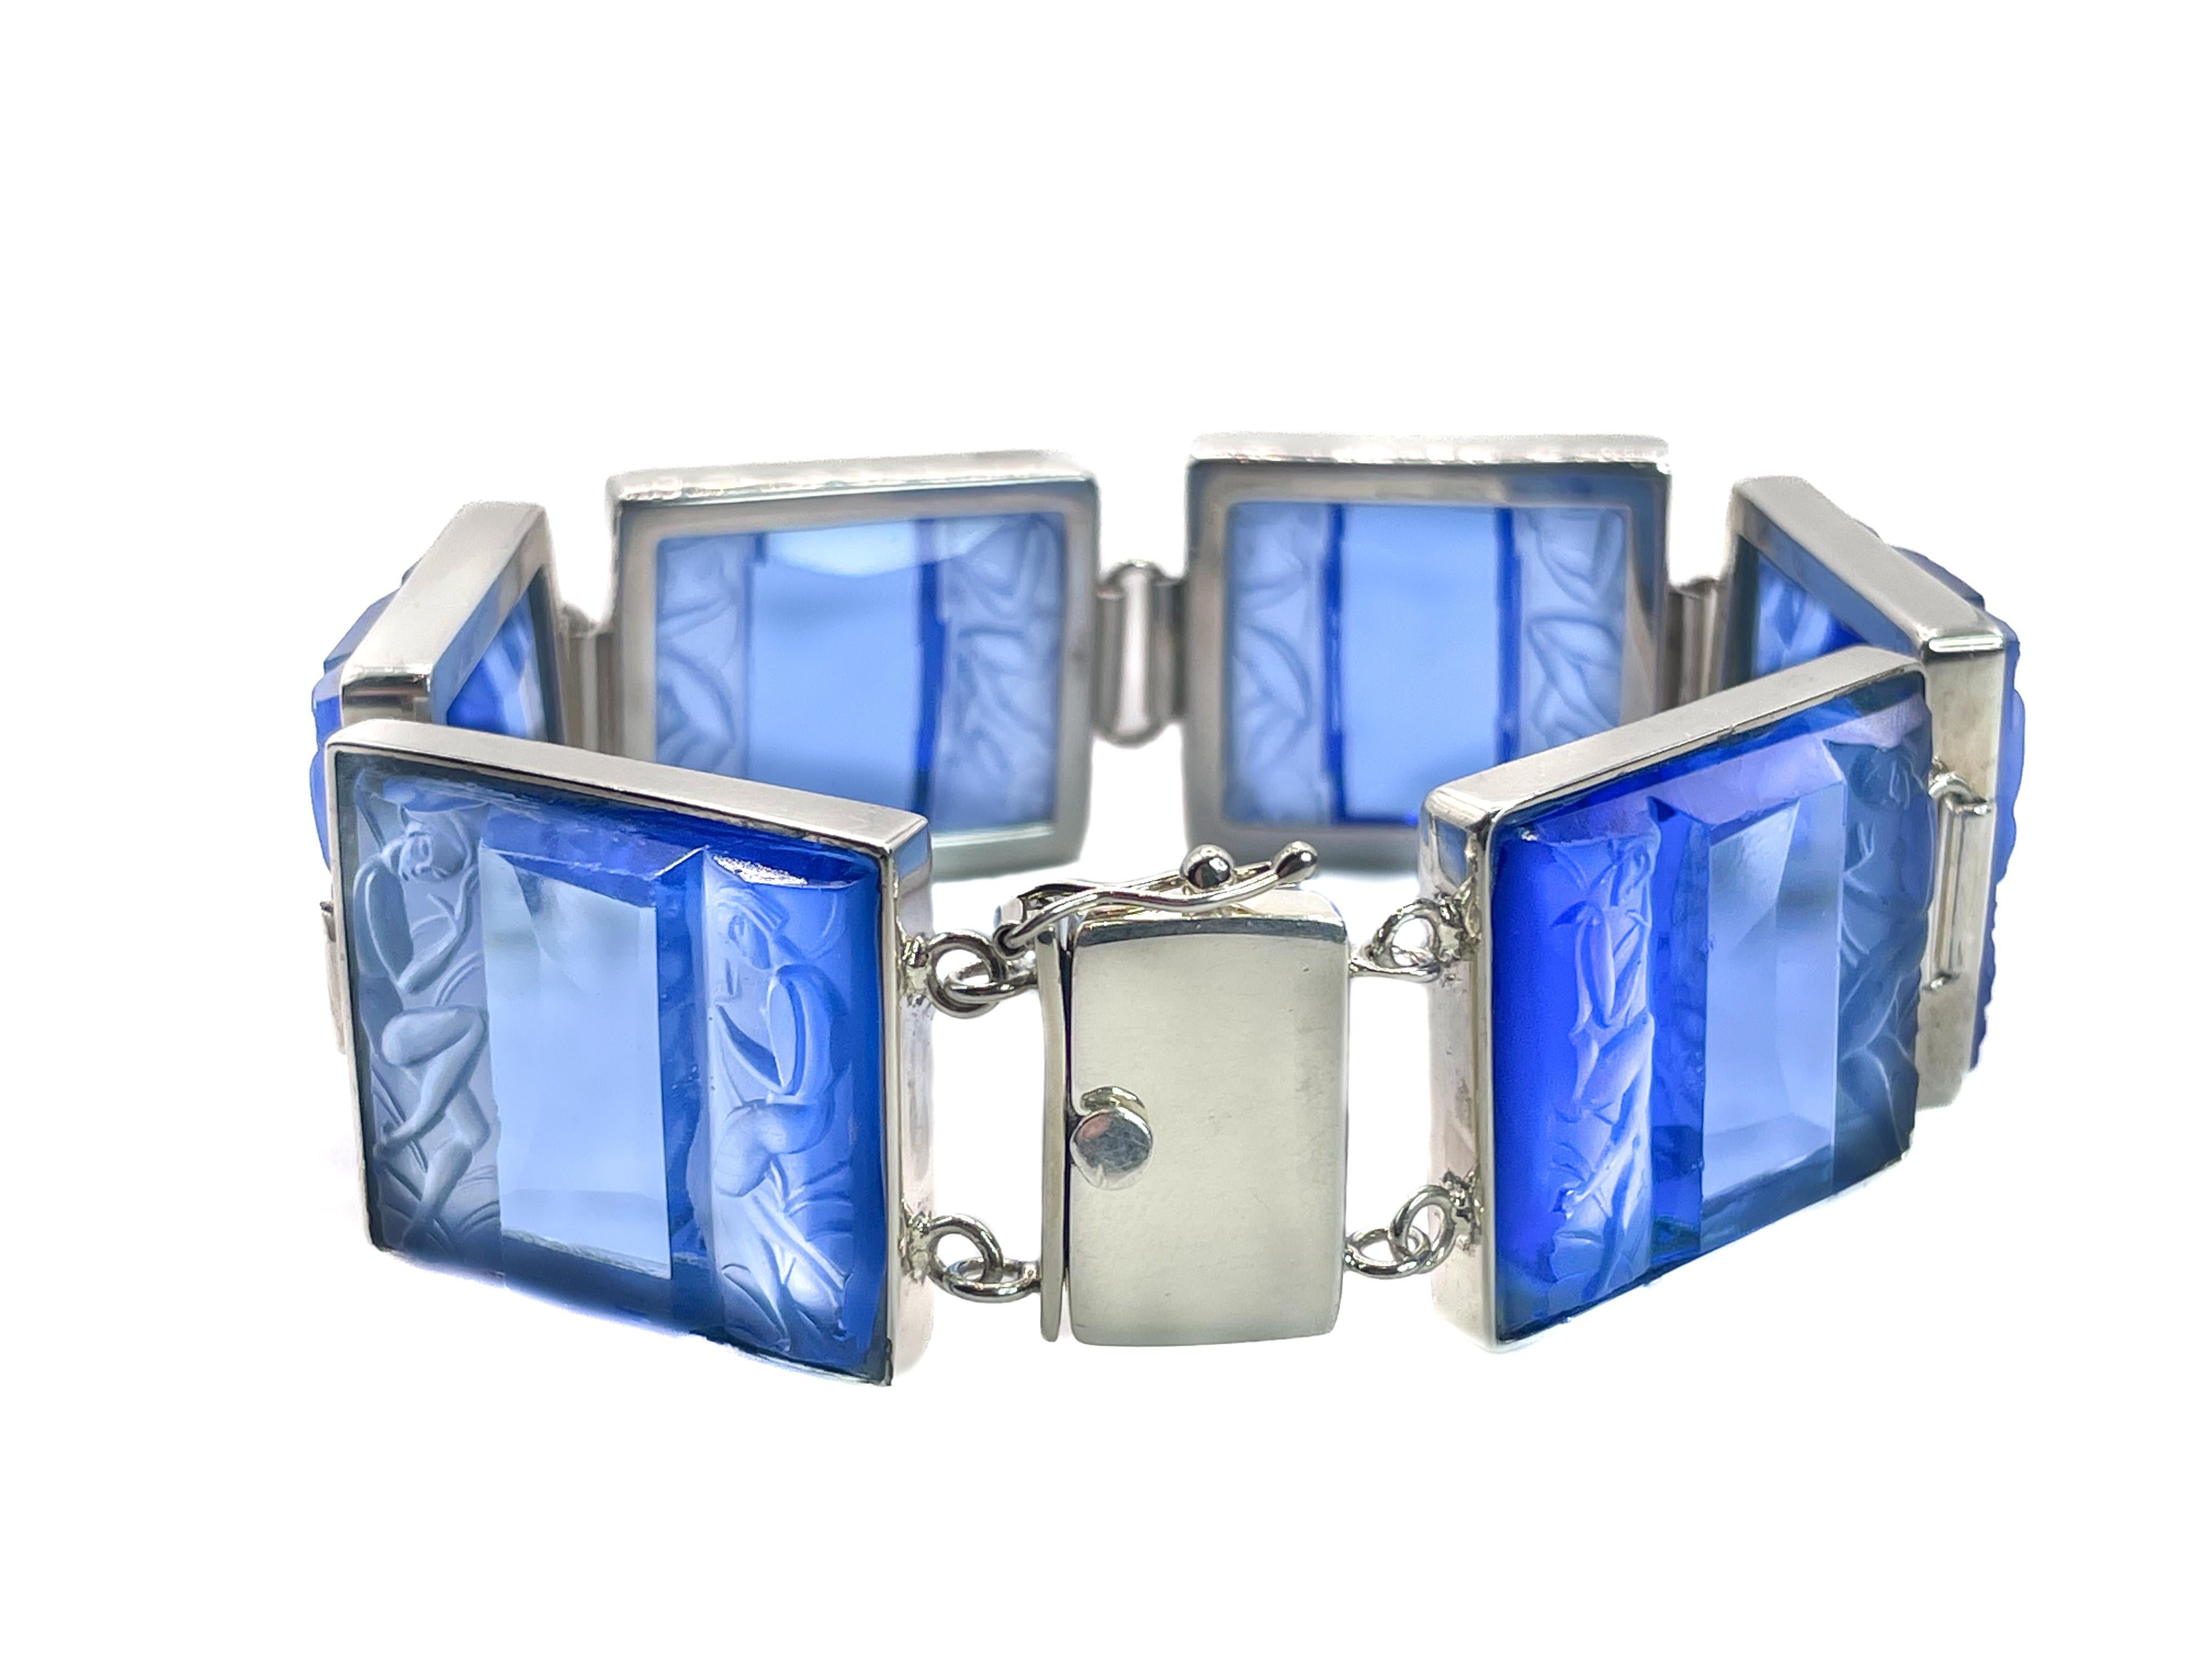 Dieses zeitlose, glamouröse Armband ist aus originalen blauen Art-déco-Glasplatten gefertigt. Das Glas zeigt ein elegantes, geformtes Motiv zweier stilisierter, nackter Frauen aus dem Art déco. 

Die Art-Déco-Bewegung spiegelt die Liebe zur Moderne,